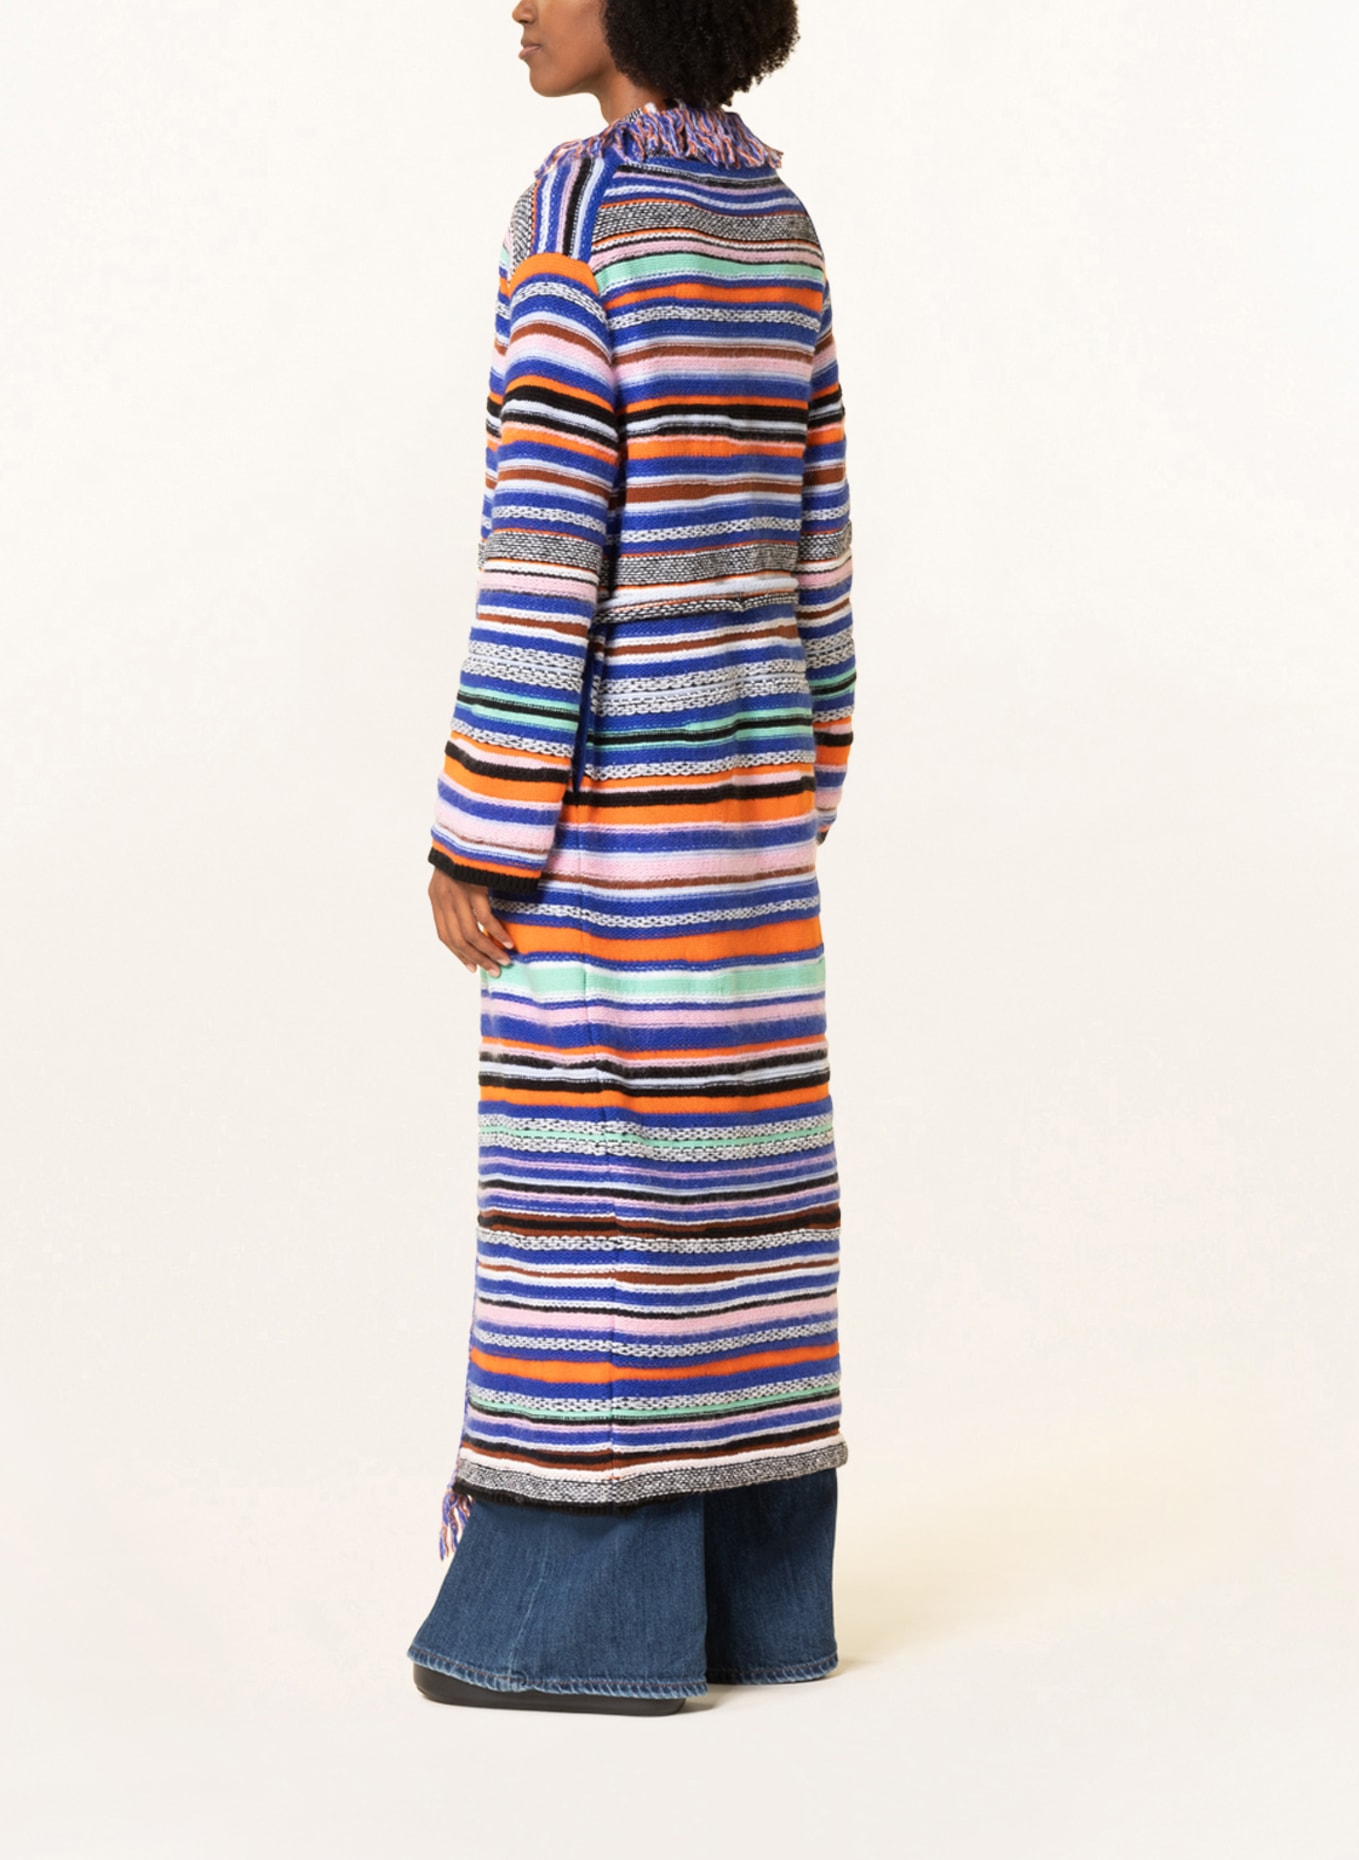 DOROTHEE SCHUMACHER Knit cardigan, Color: BLUE/ ORANGE (Image 3)